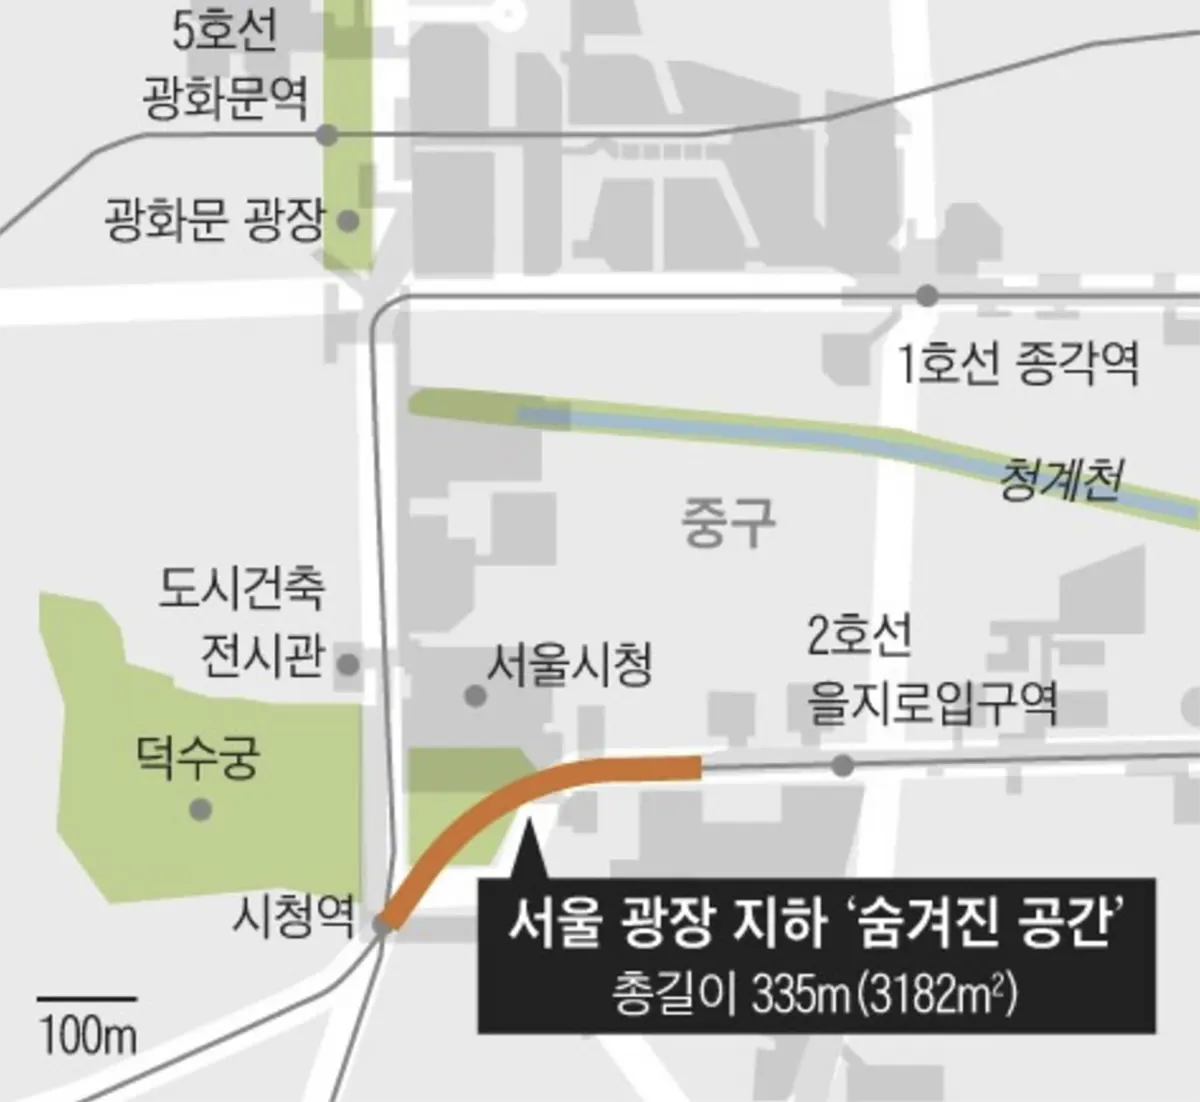 서울광장지하-시청역-을지로입구역-사이-숨은공간-위치